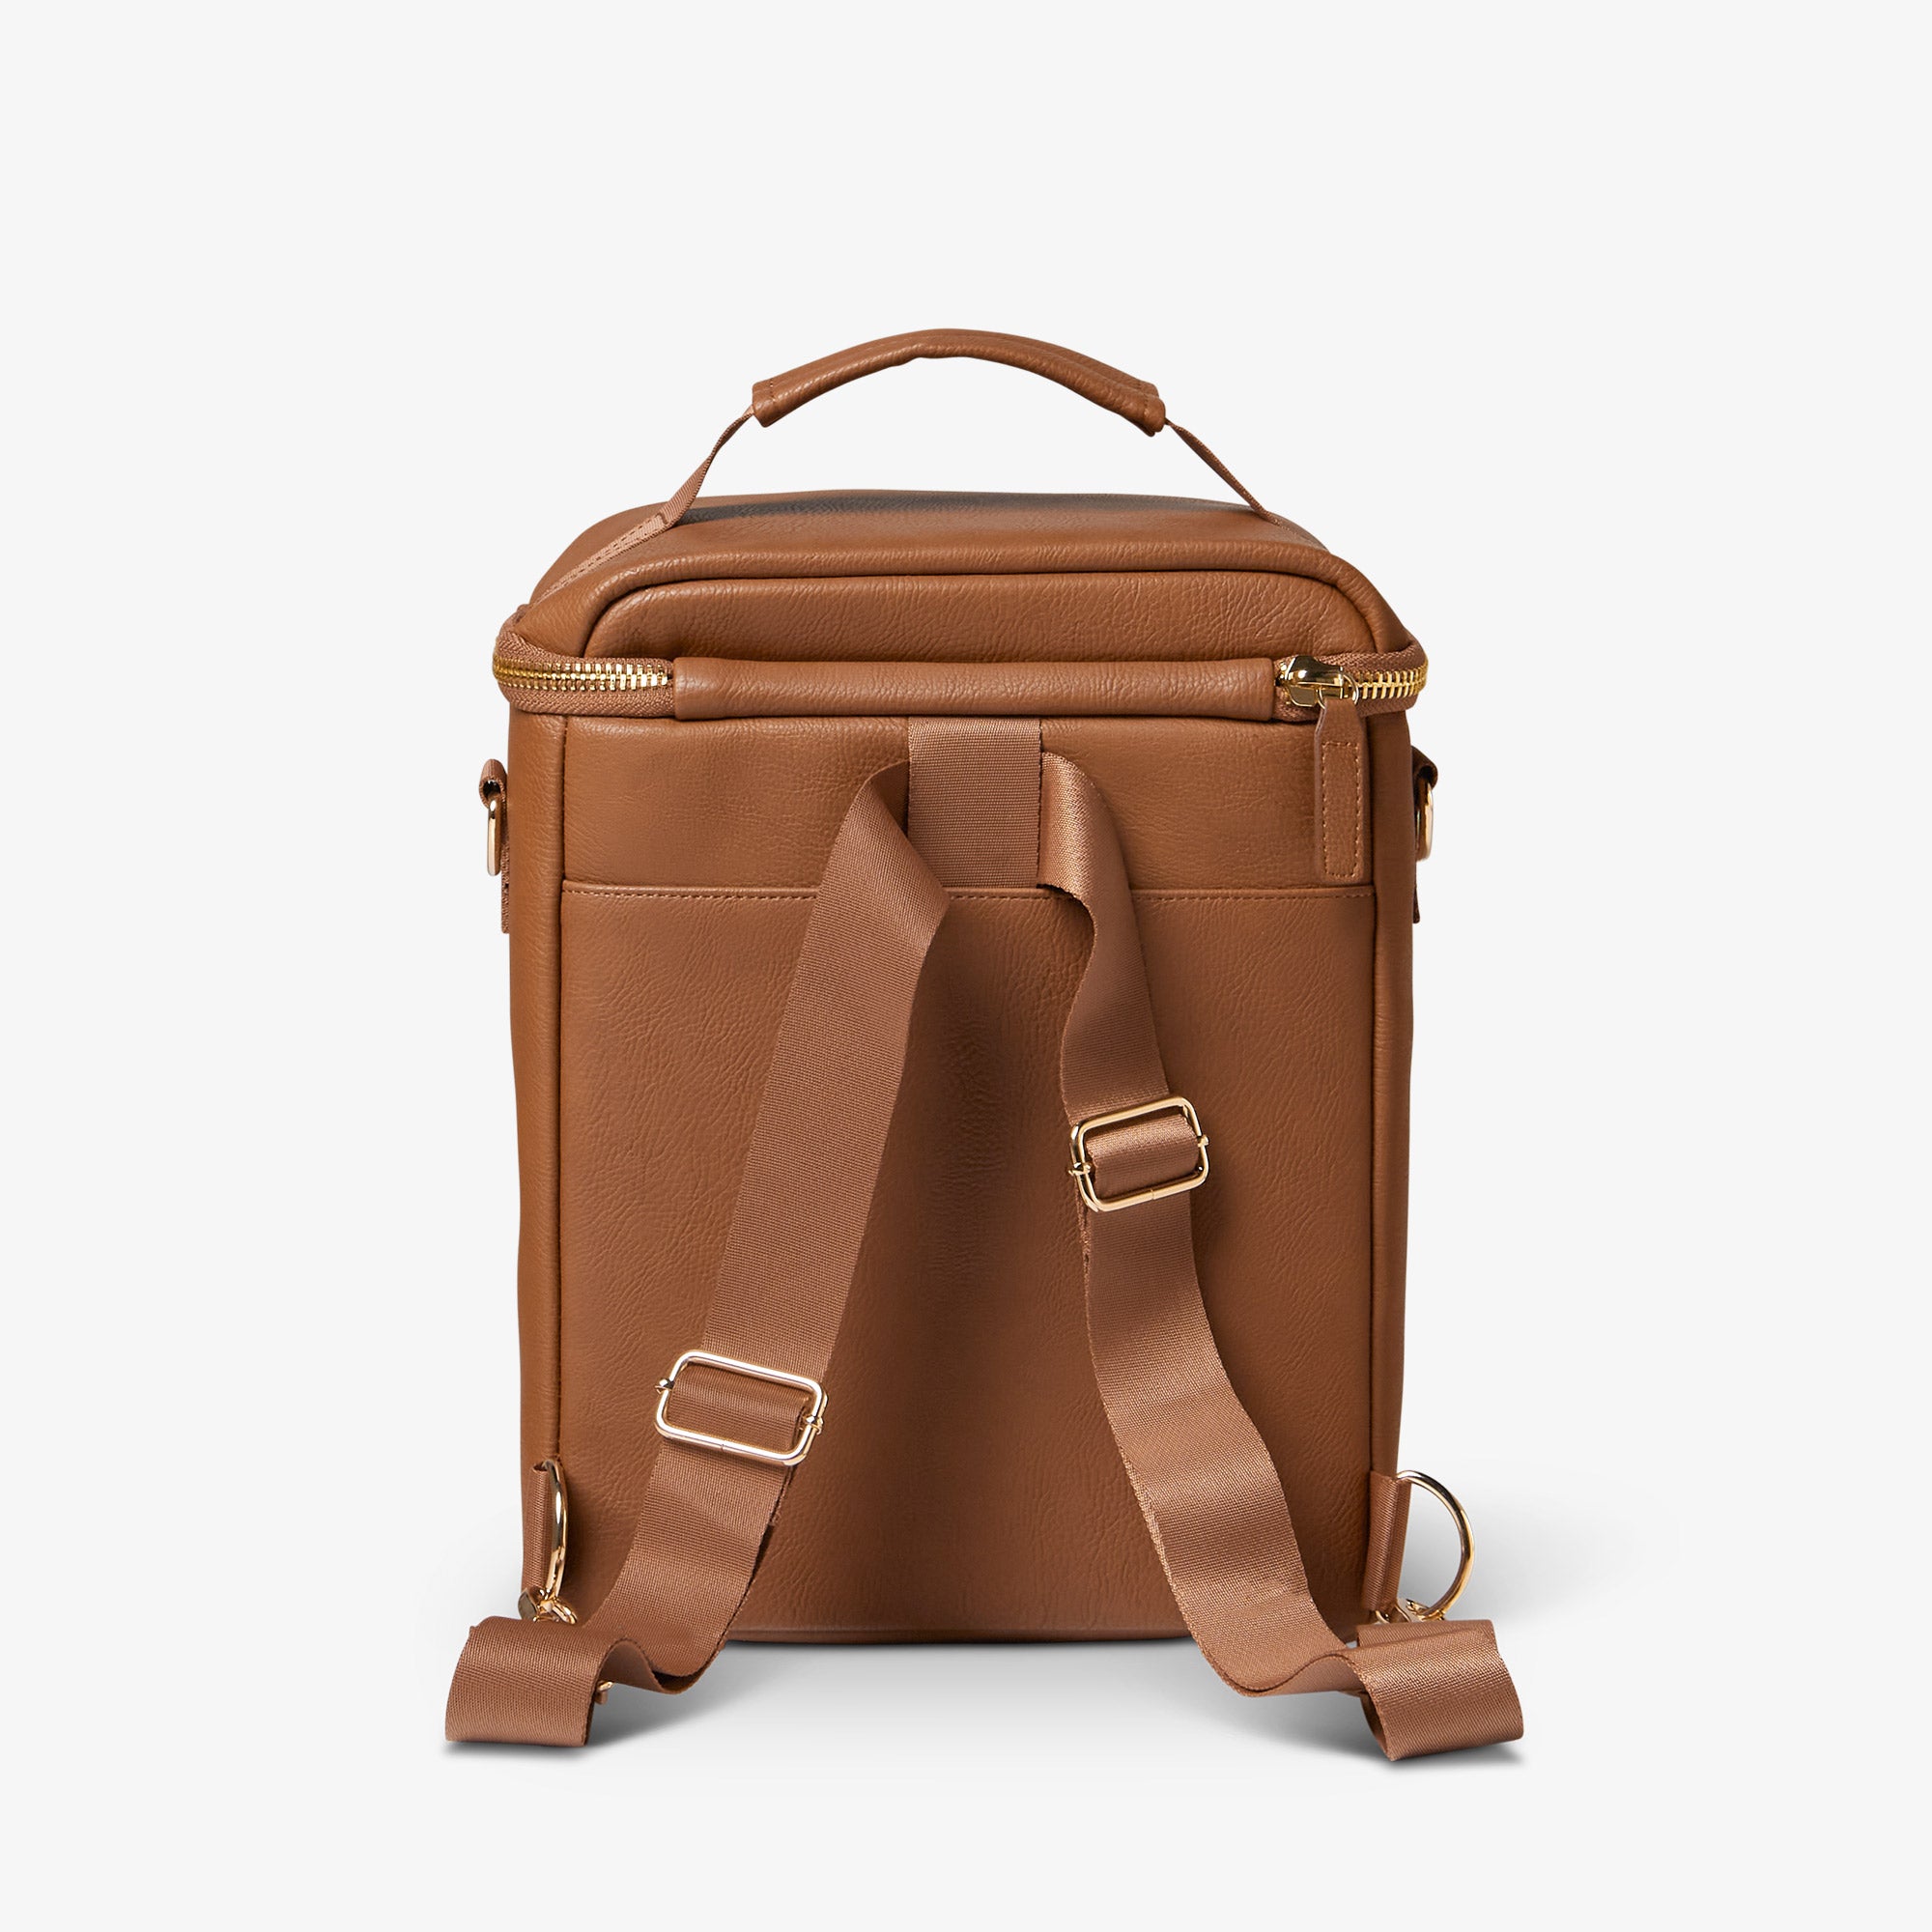 DIY Leather Lunch Bag Tutorial ~ DIY Tutorial Ideas!